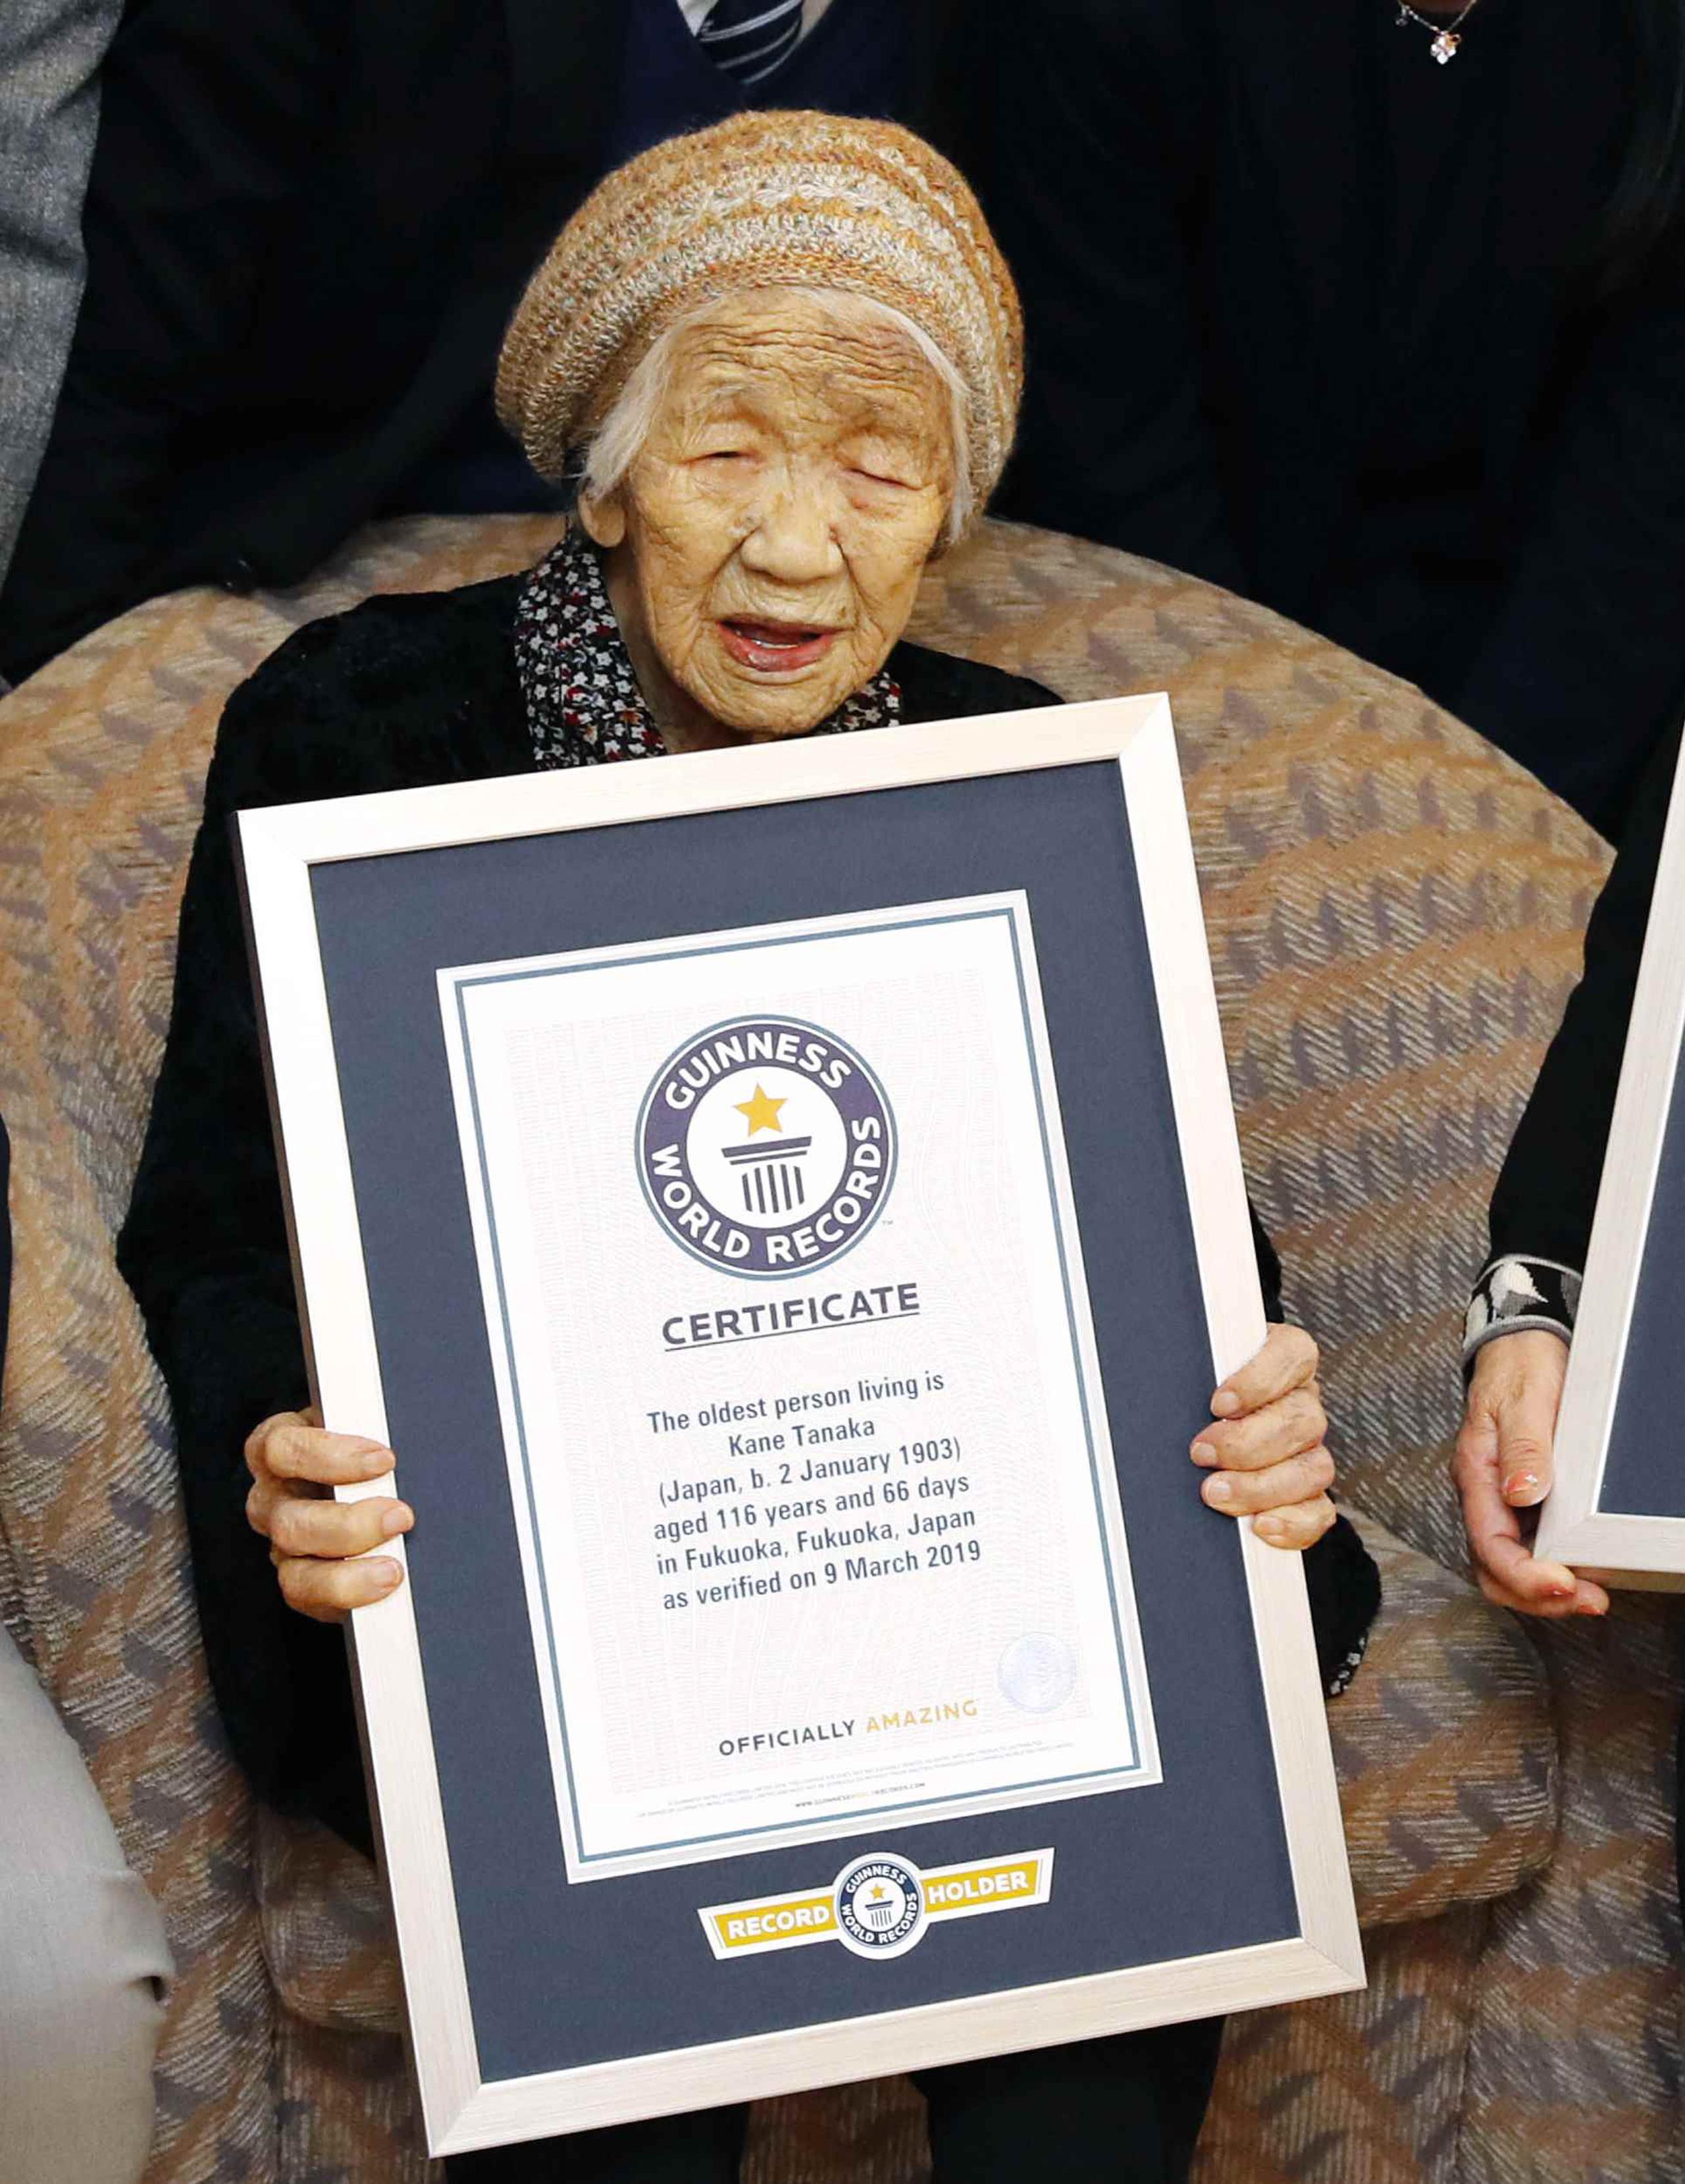 Kane Tanaka, una japonesa de 116 años de edad, posa con su certificado Guinness World Records en una residencia de ancianos donde vive en Fukuoka, suroeste de Japón. (Takuto Kaneko/Kyodo News vía AP)